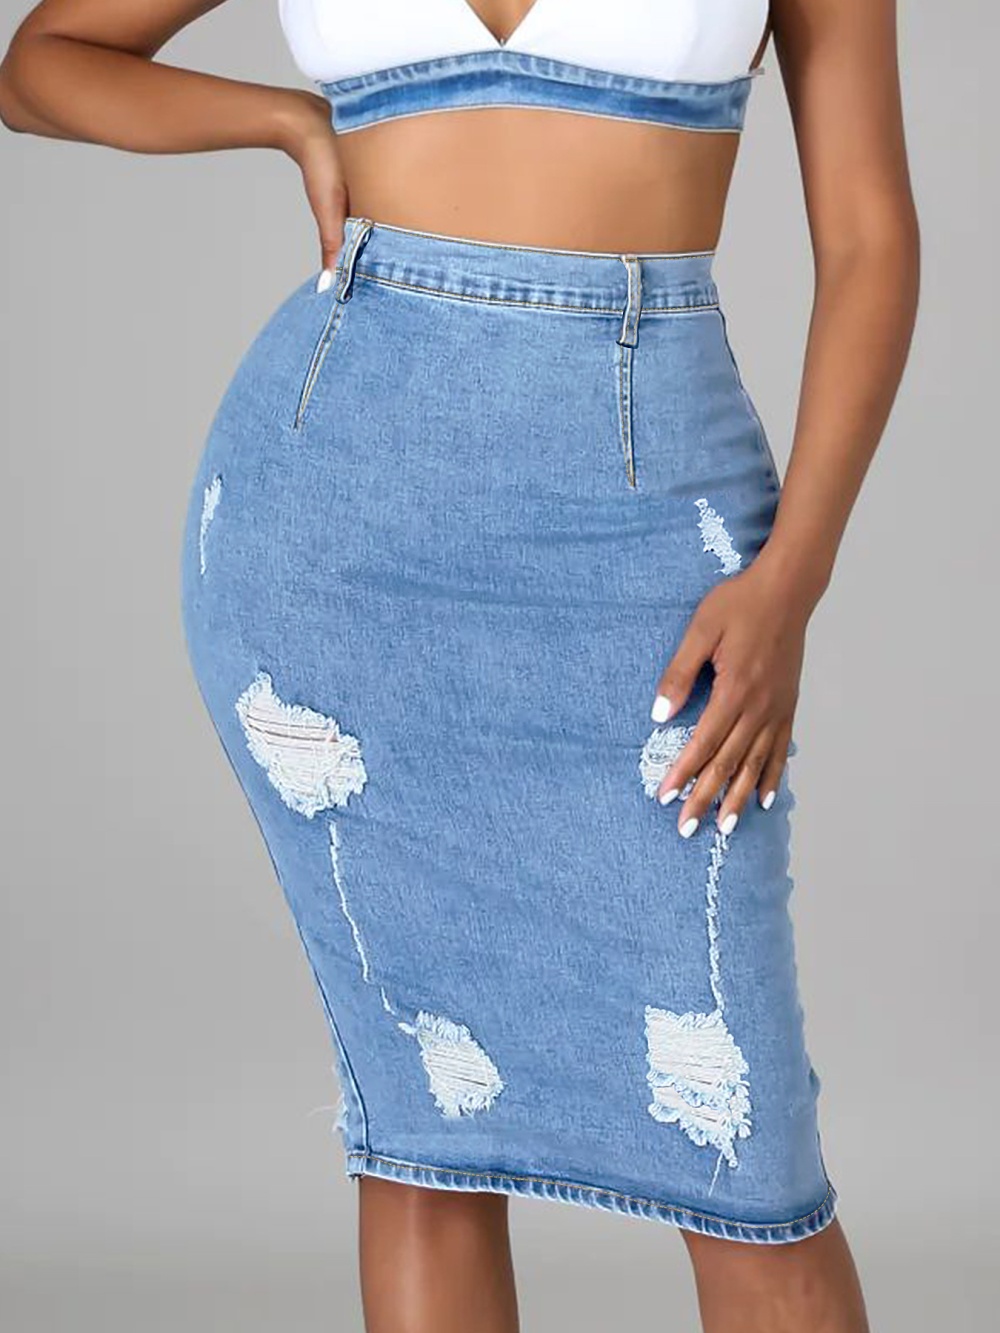 Street denim package hip holes short skirt for women